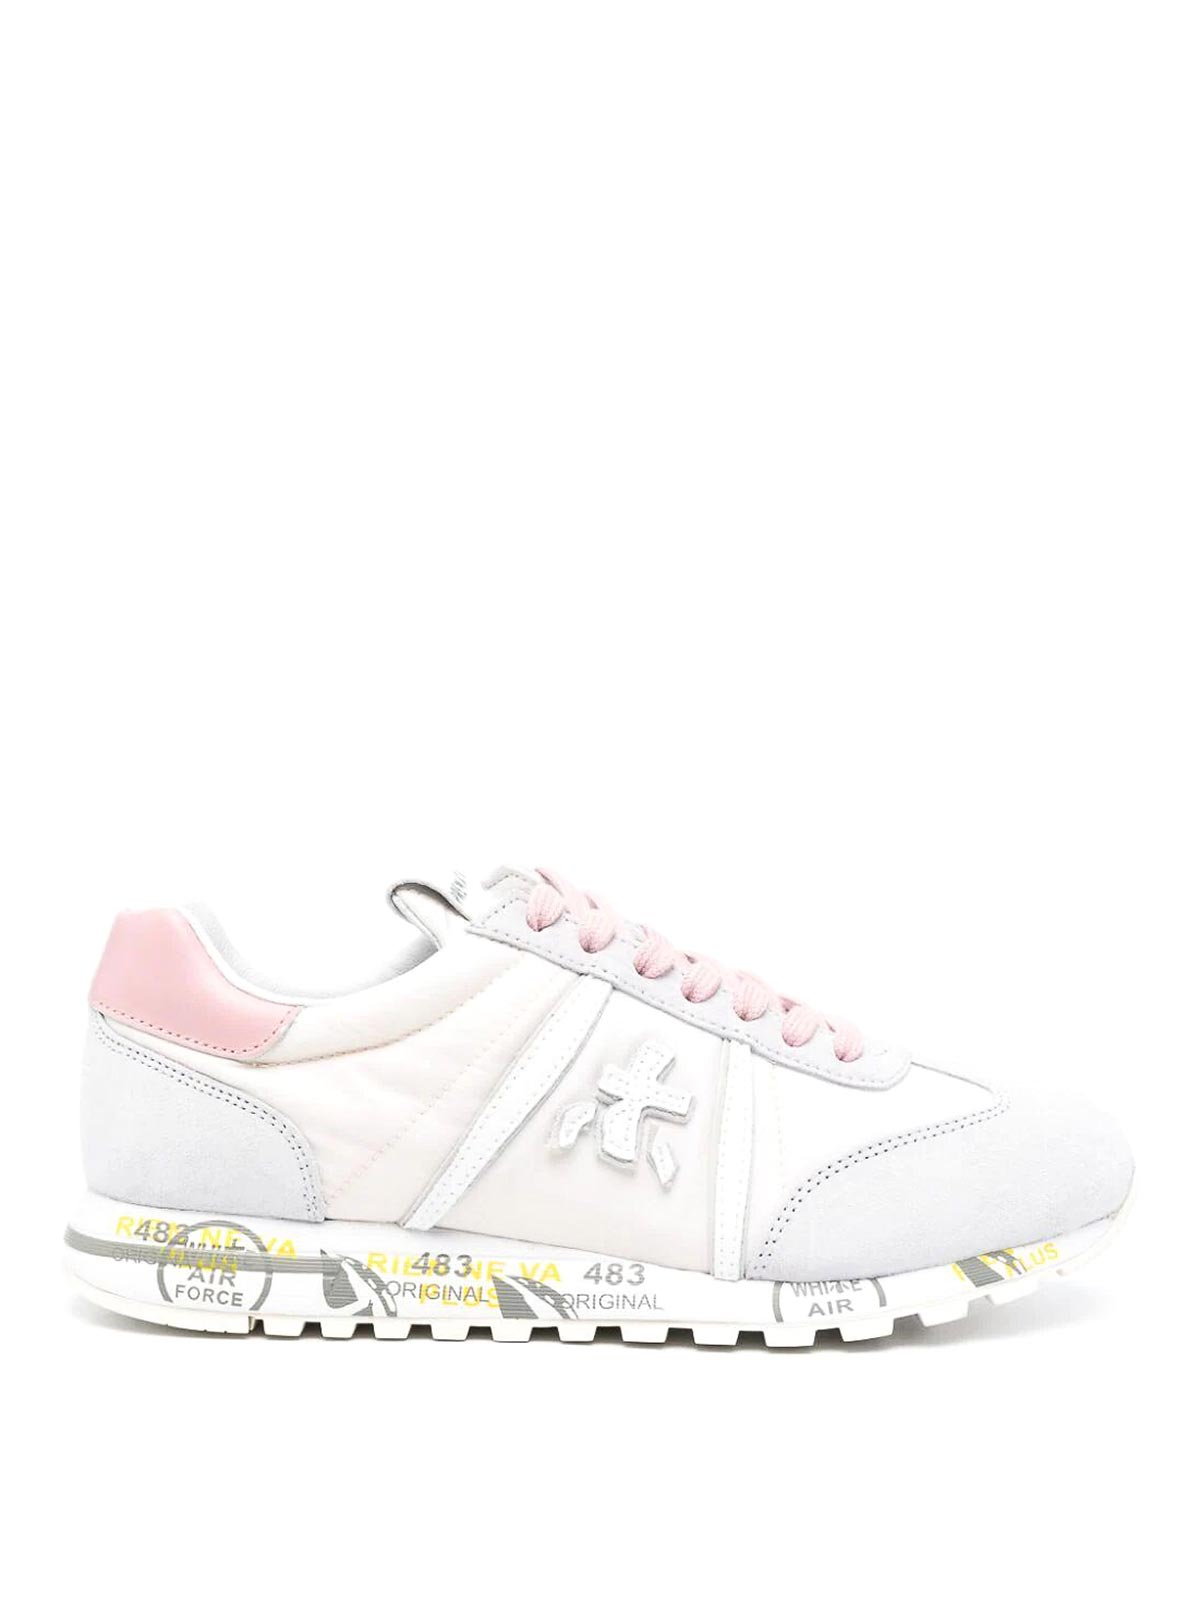 Premiata Lucyd Bi Material Sneakers In Pink